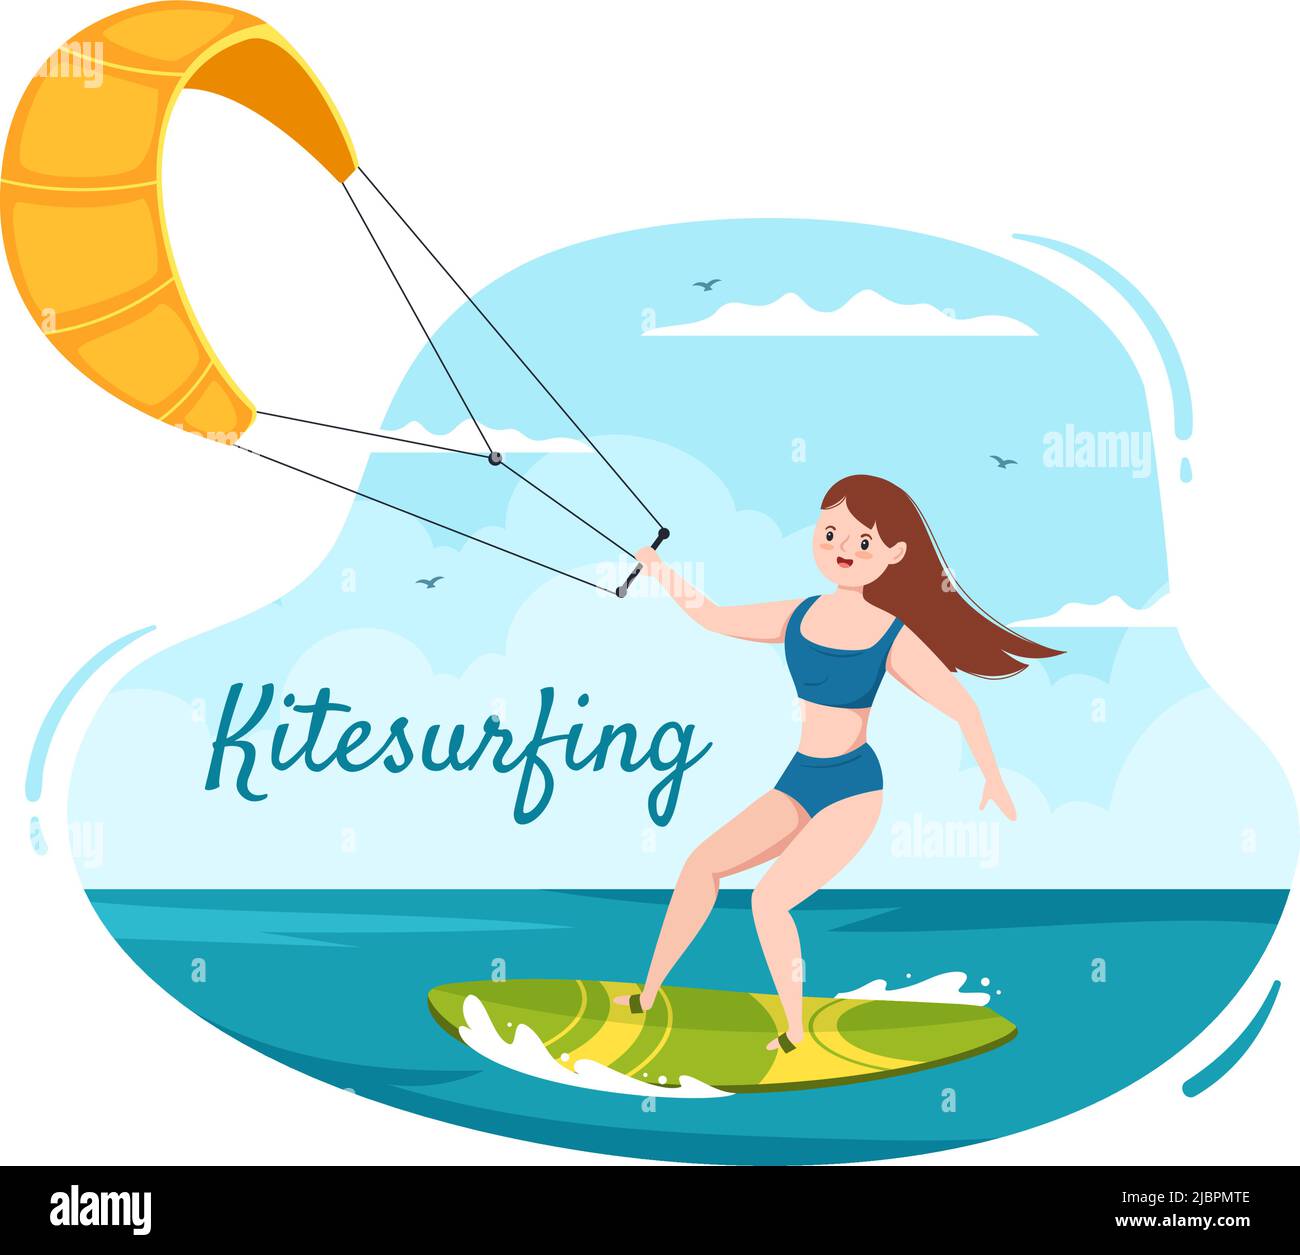 Kitesurfing d'été des activités de sports nautiques Illustration du dessin animé avec un grand cerf-volant sur un conseil en style plat Illustration de Vecteur